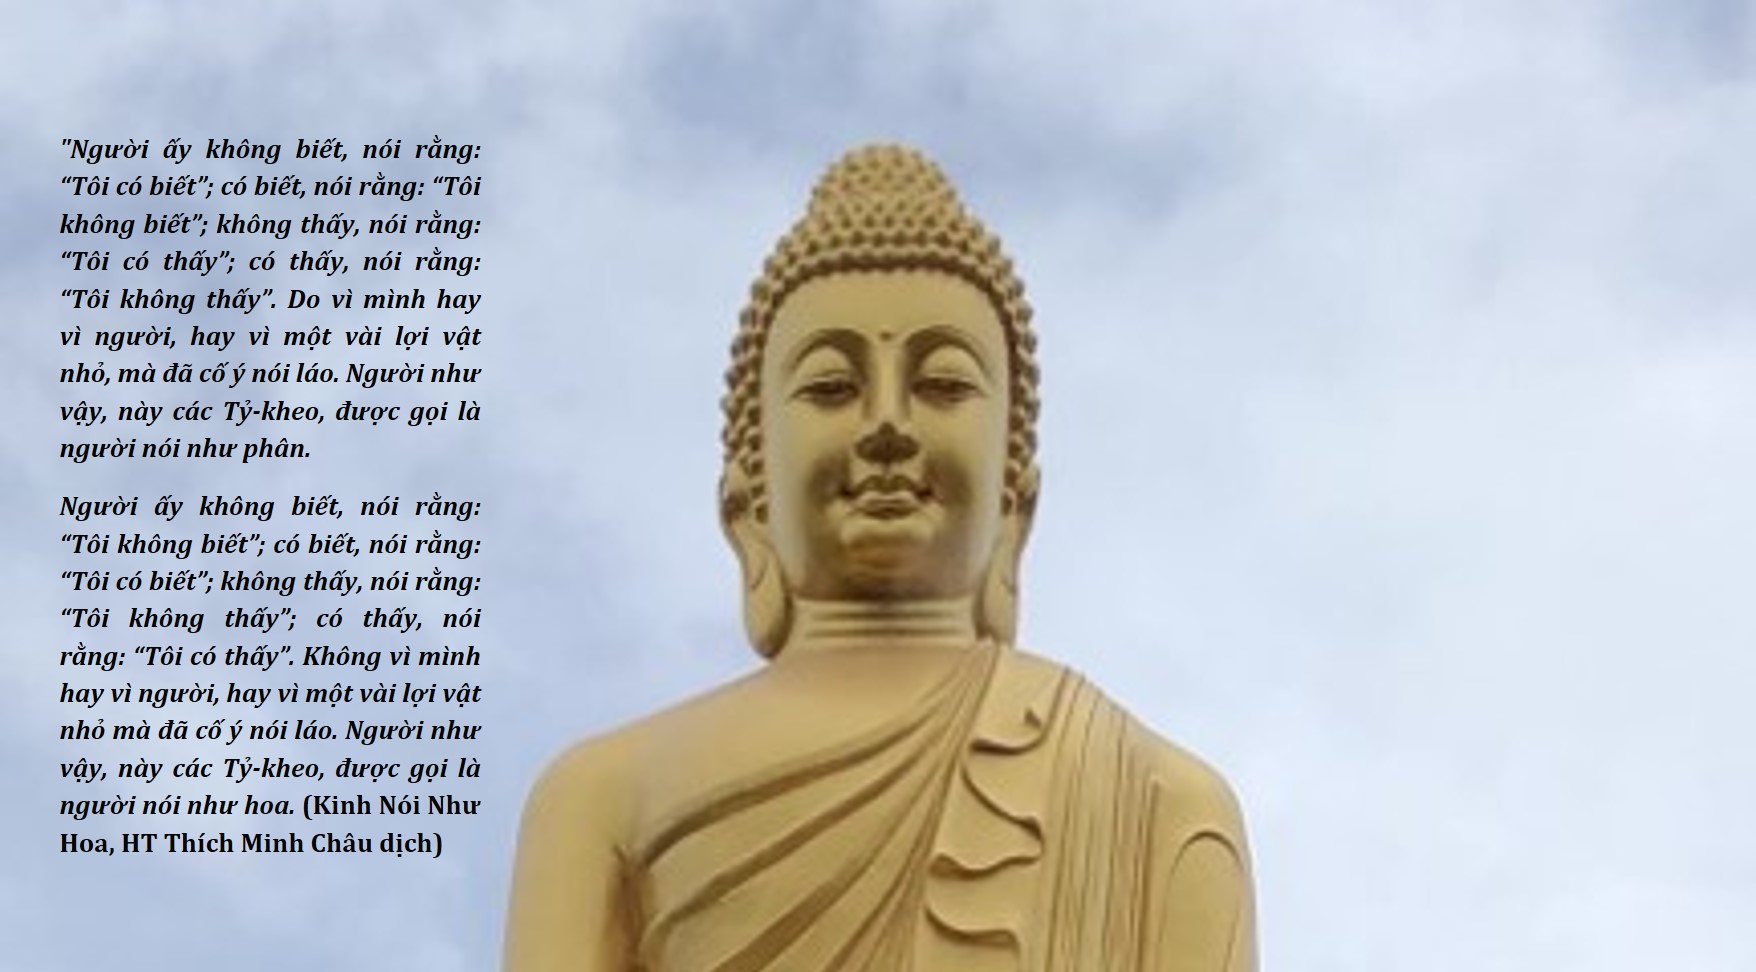 "Thấy Biết" Trong Lời Dạy Của Đức Phật